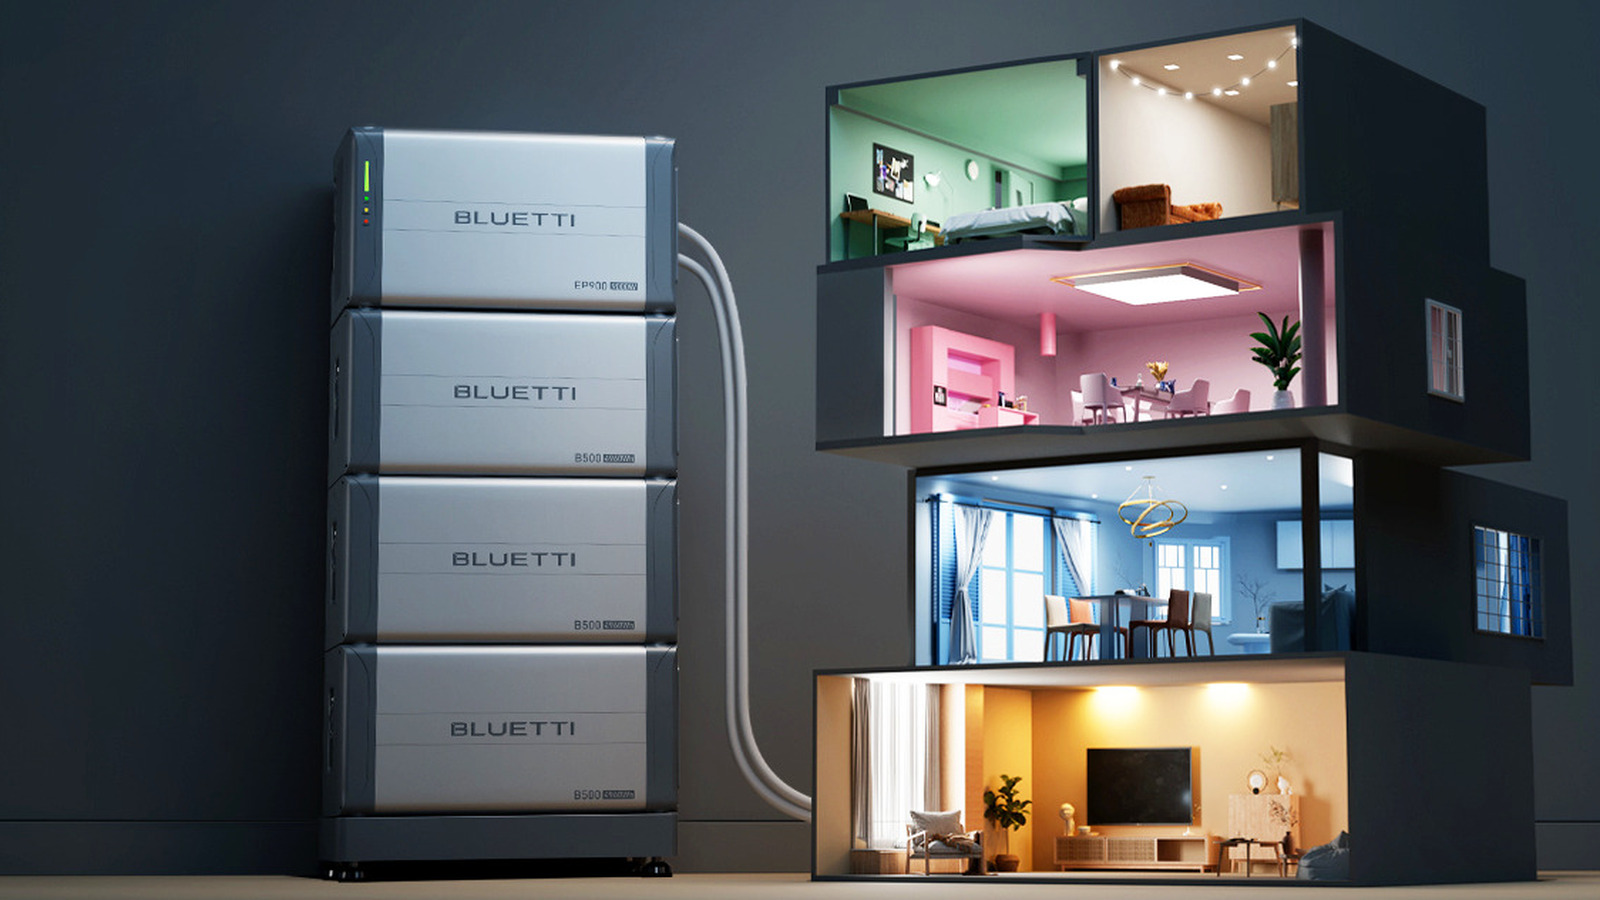 سیستم ذخیره انرژی Bluetti EP900 پشتیبان قطع برق کل خانه را به ایالات متحده می آورد